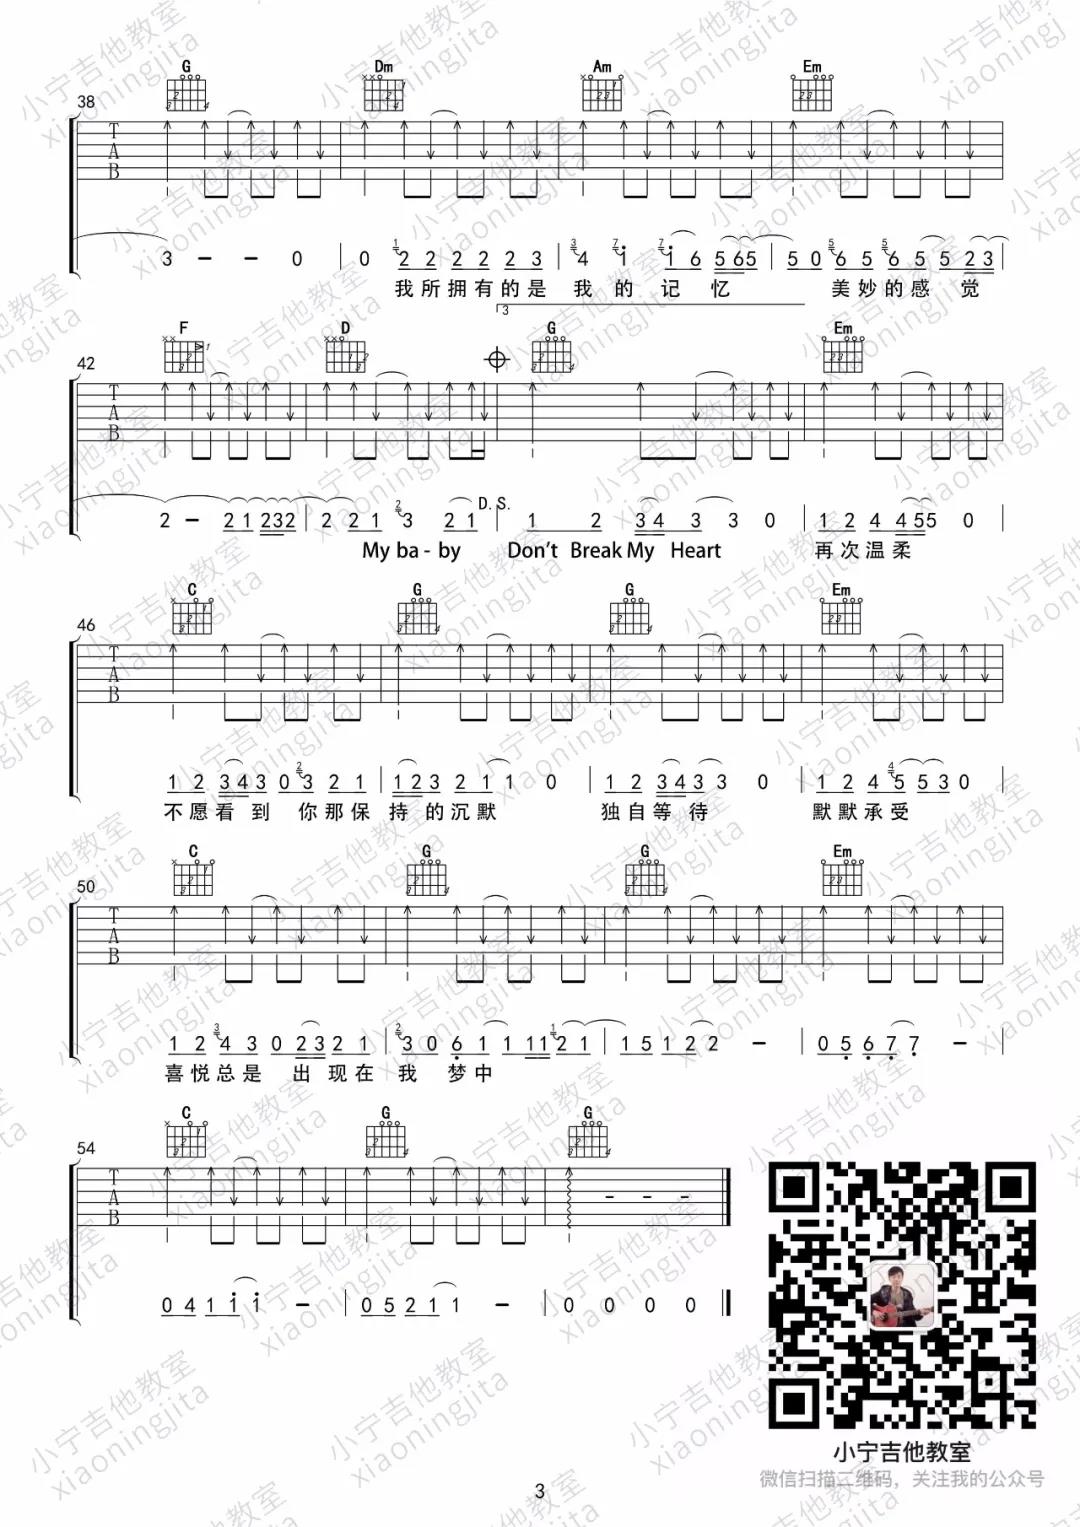 黑豹乐队《Dont Break My Heart》吉他谱(C调)-Guitar Music Score